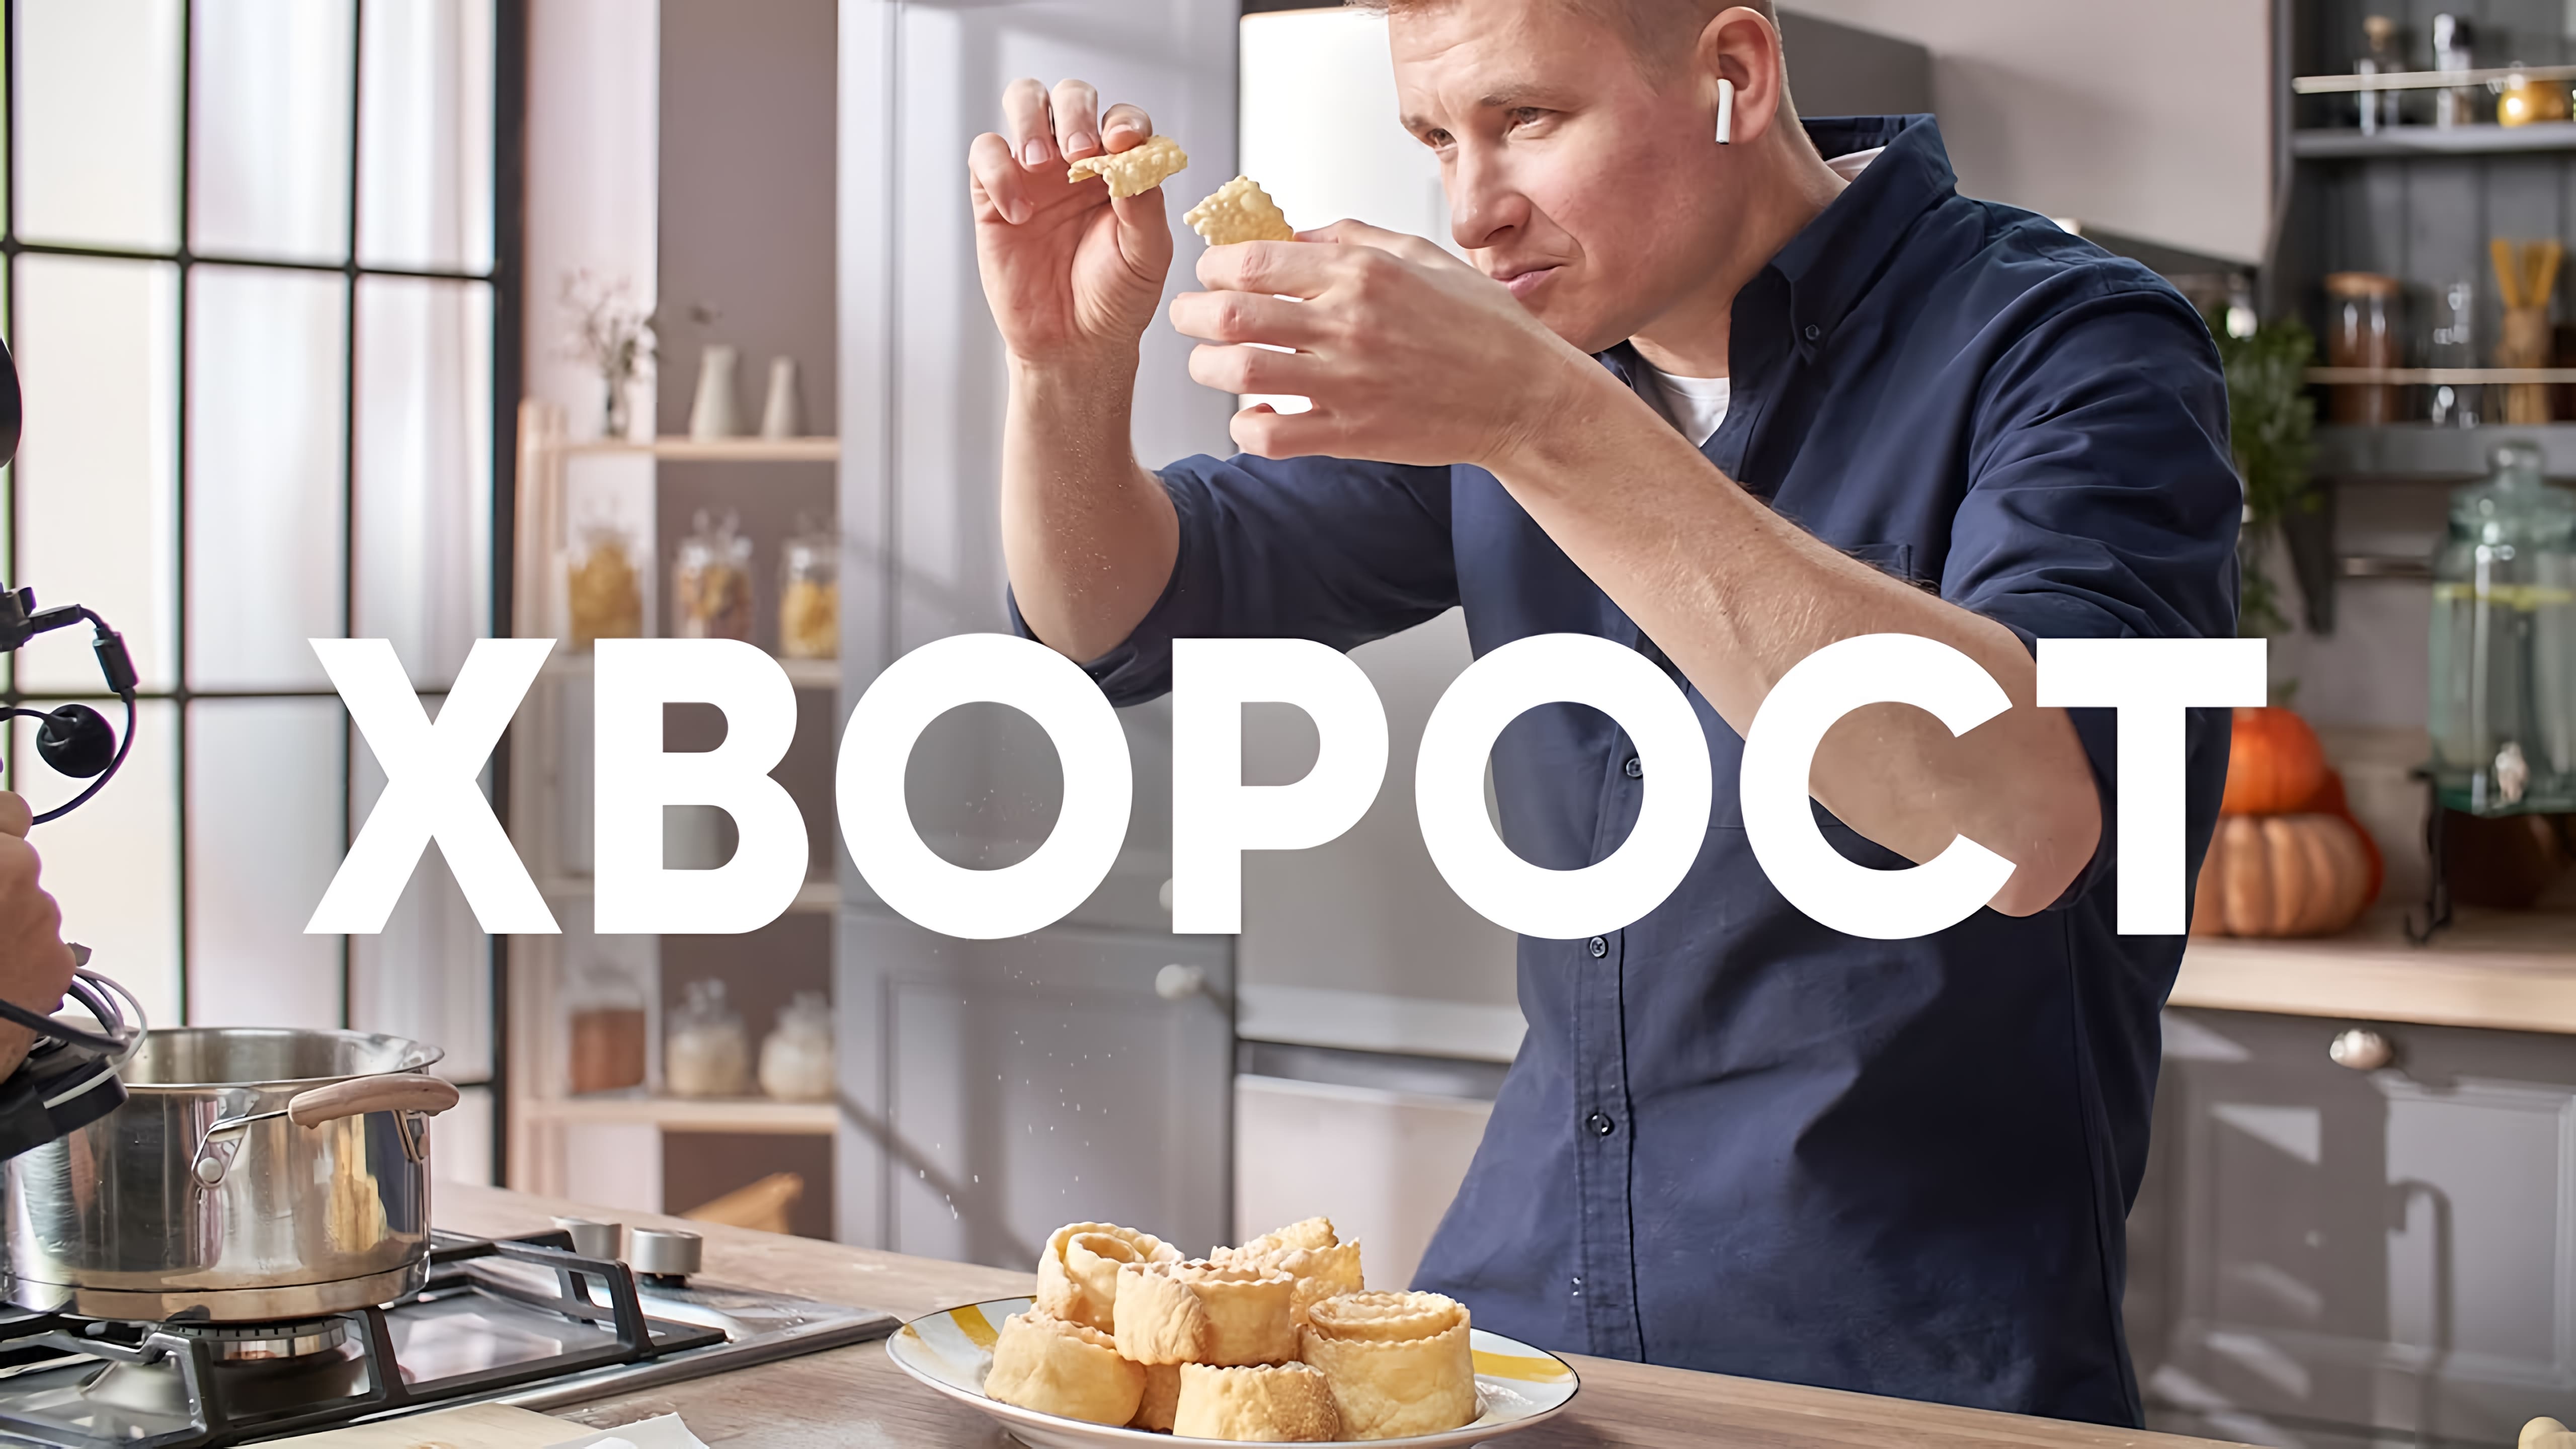 Видео: ПЕЧЕНЬЕ «ХВОРОСТ» — рецепт от шефа Бельковича | ПроСто кухня |